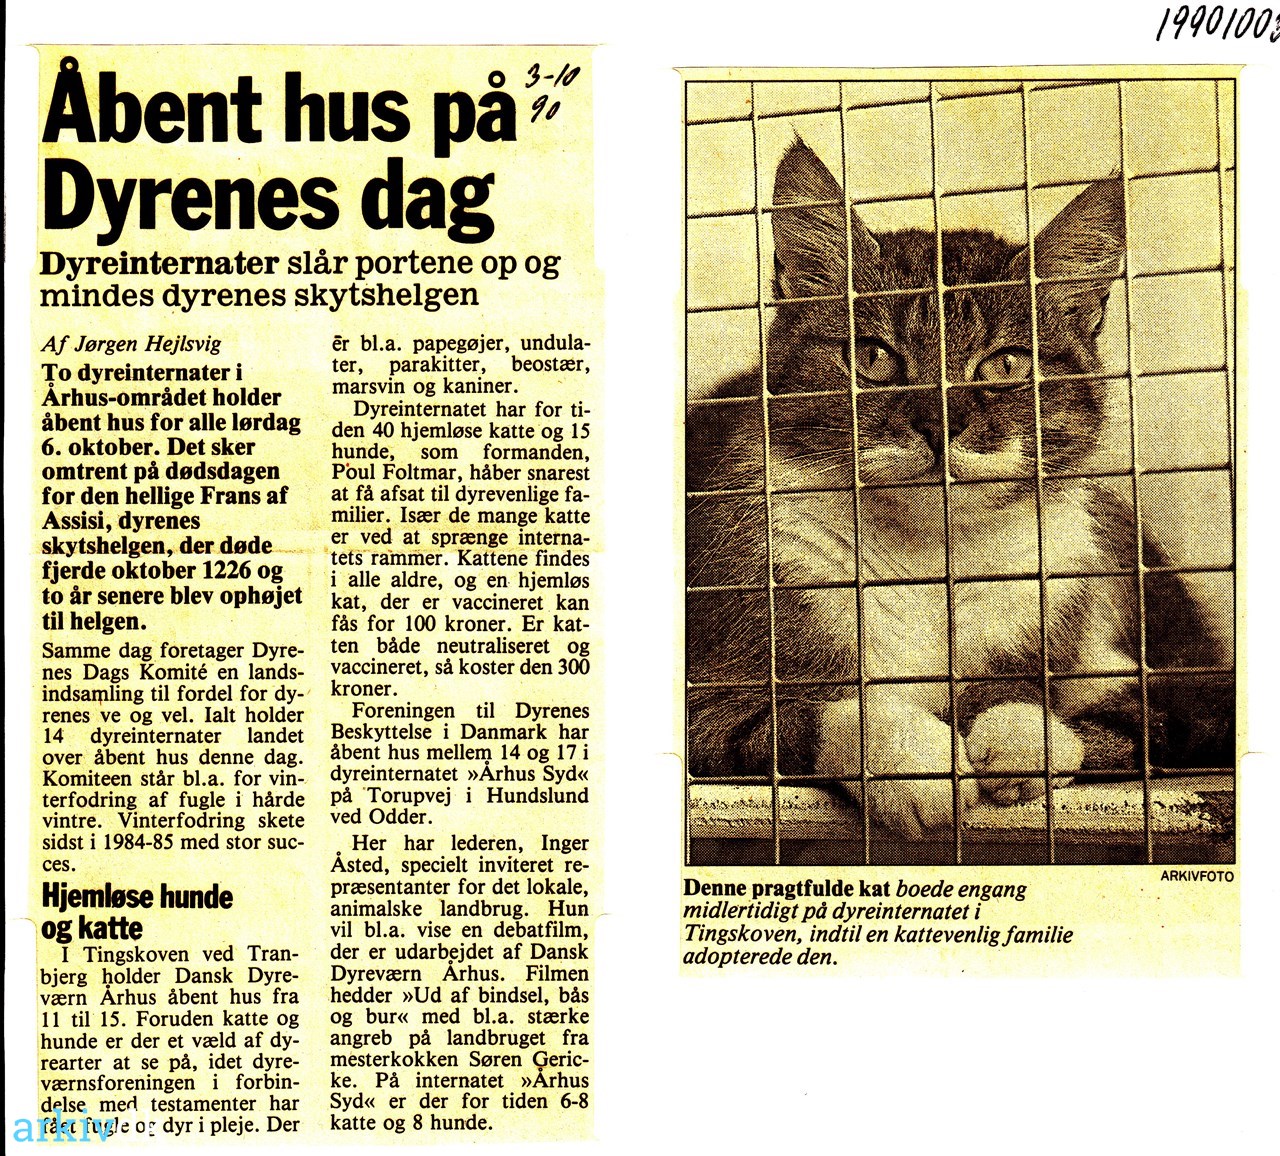 arkiv.dk | Åbent hus på dag" 1990. slår portene og mindes dyrenes skytshelgen